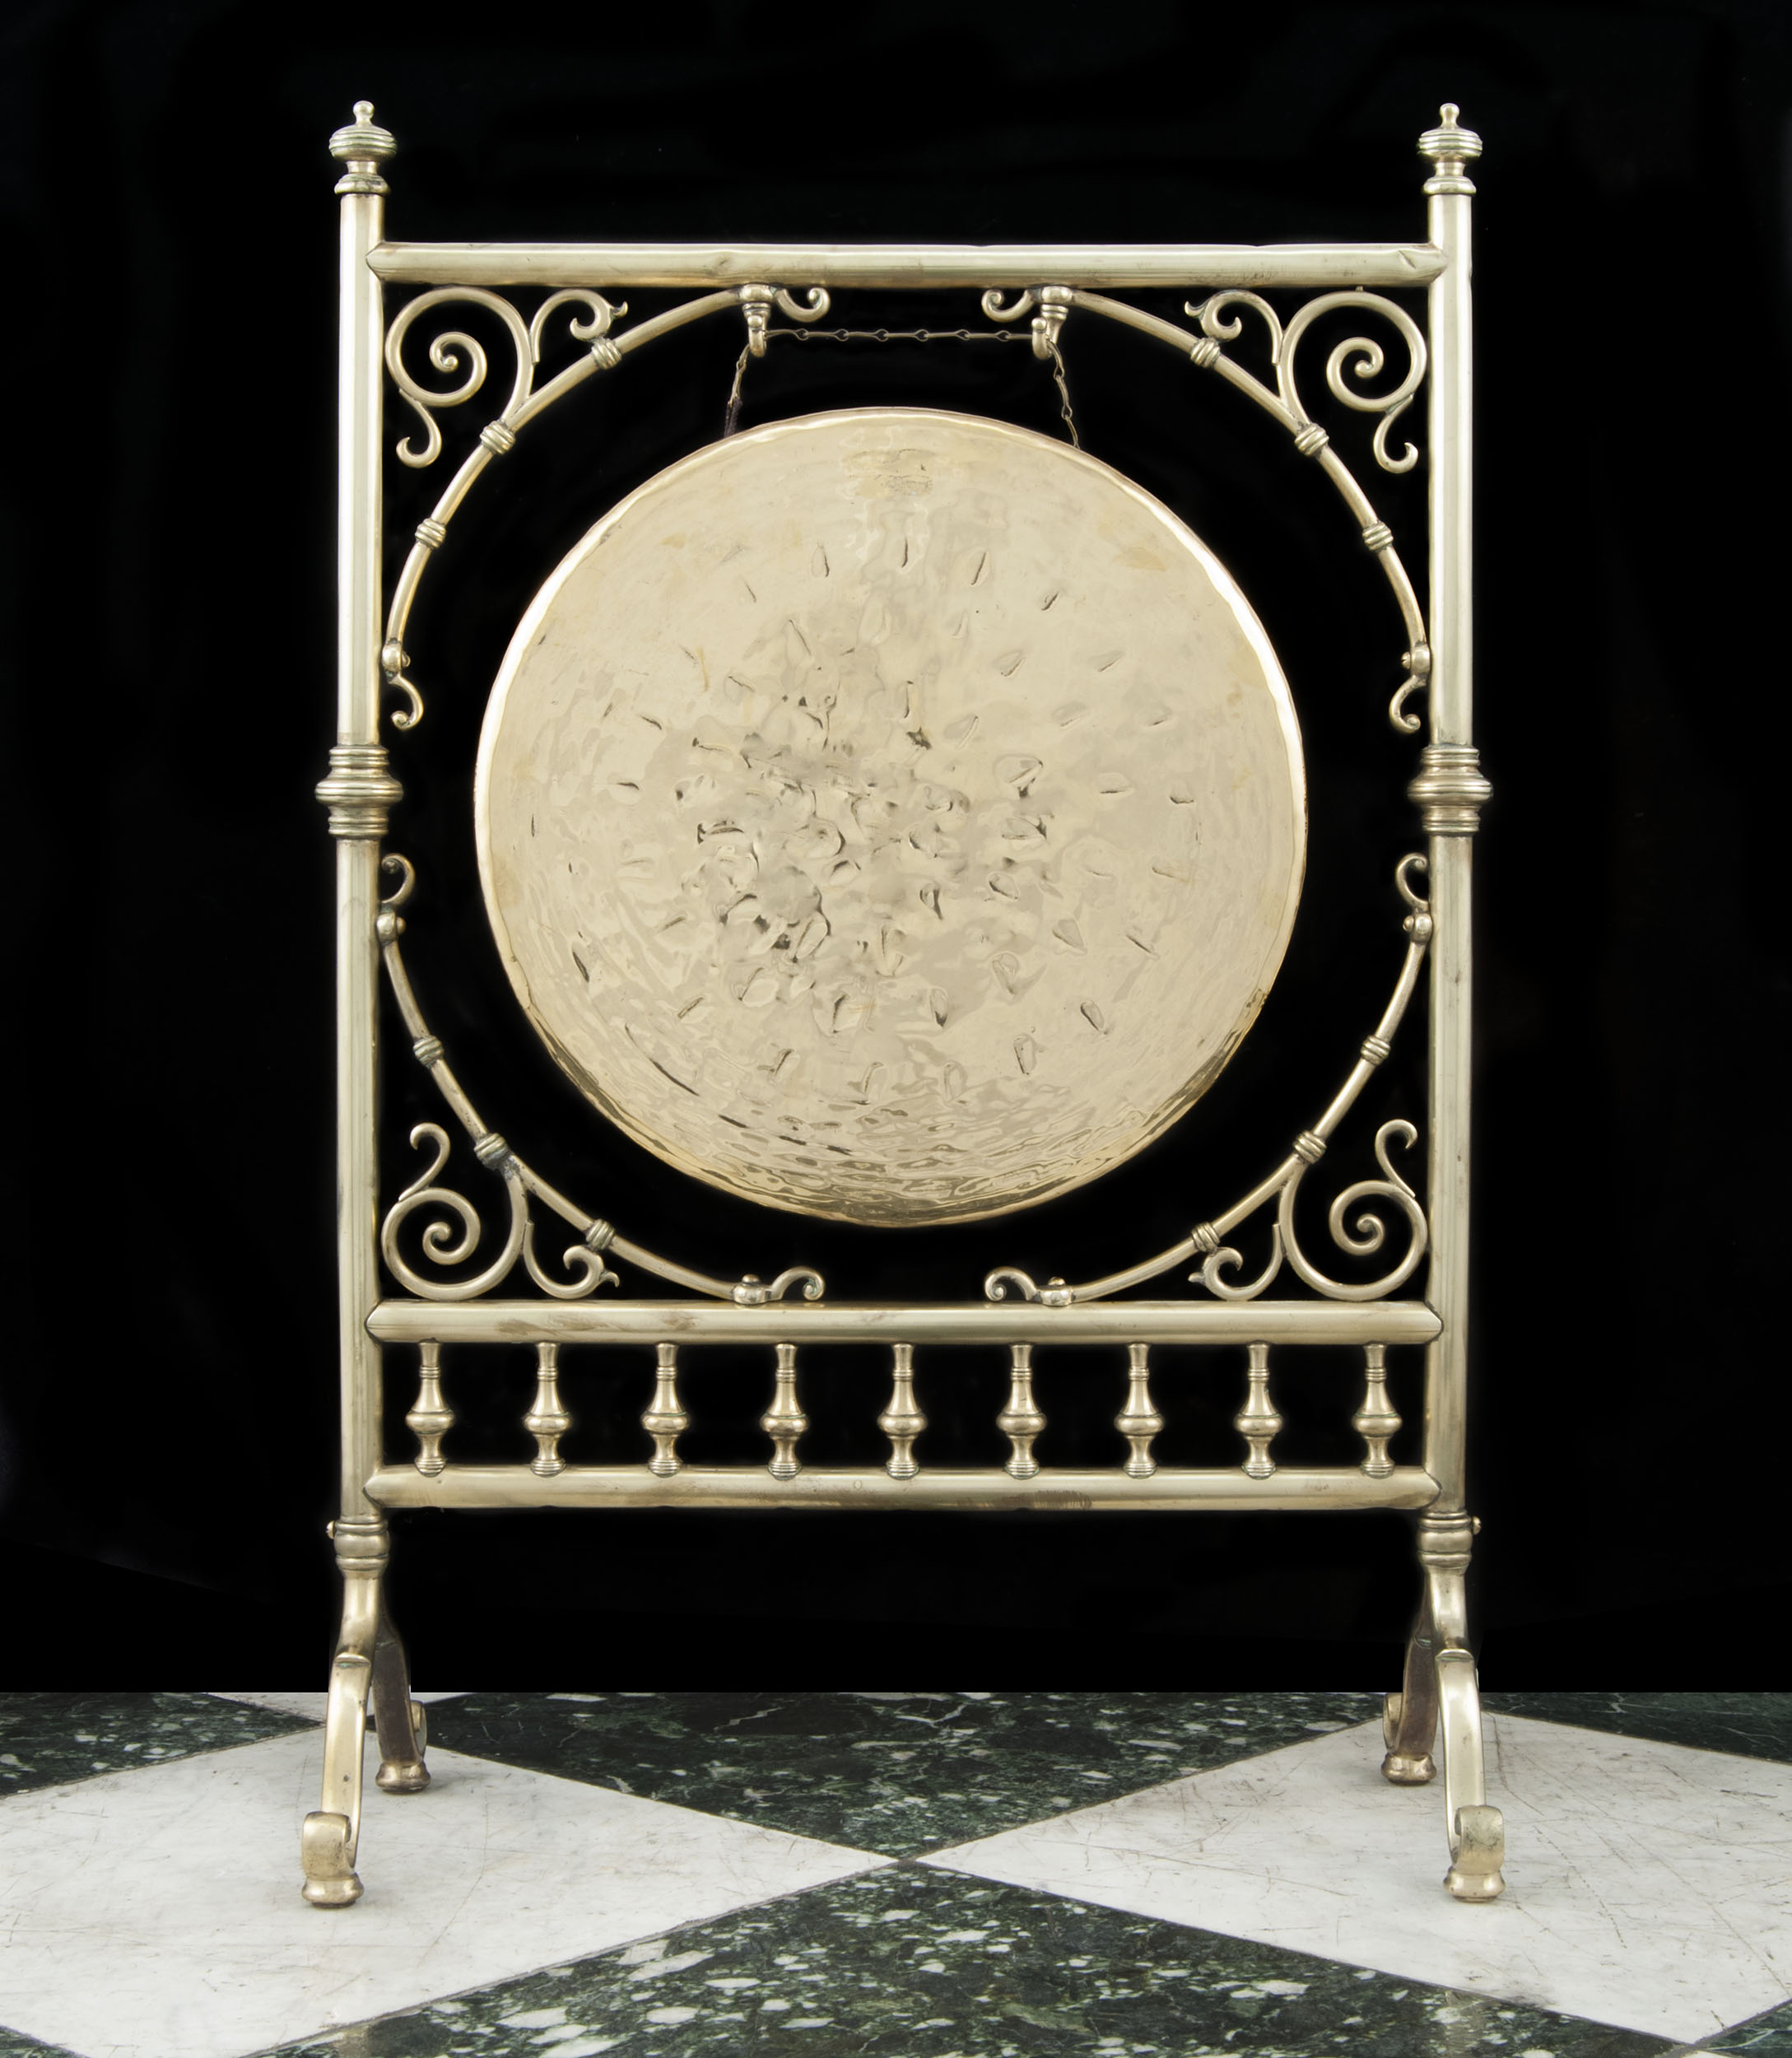 A Victorian brass dinner gong